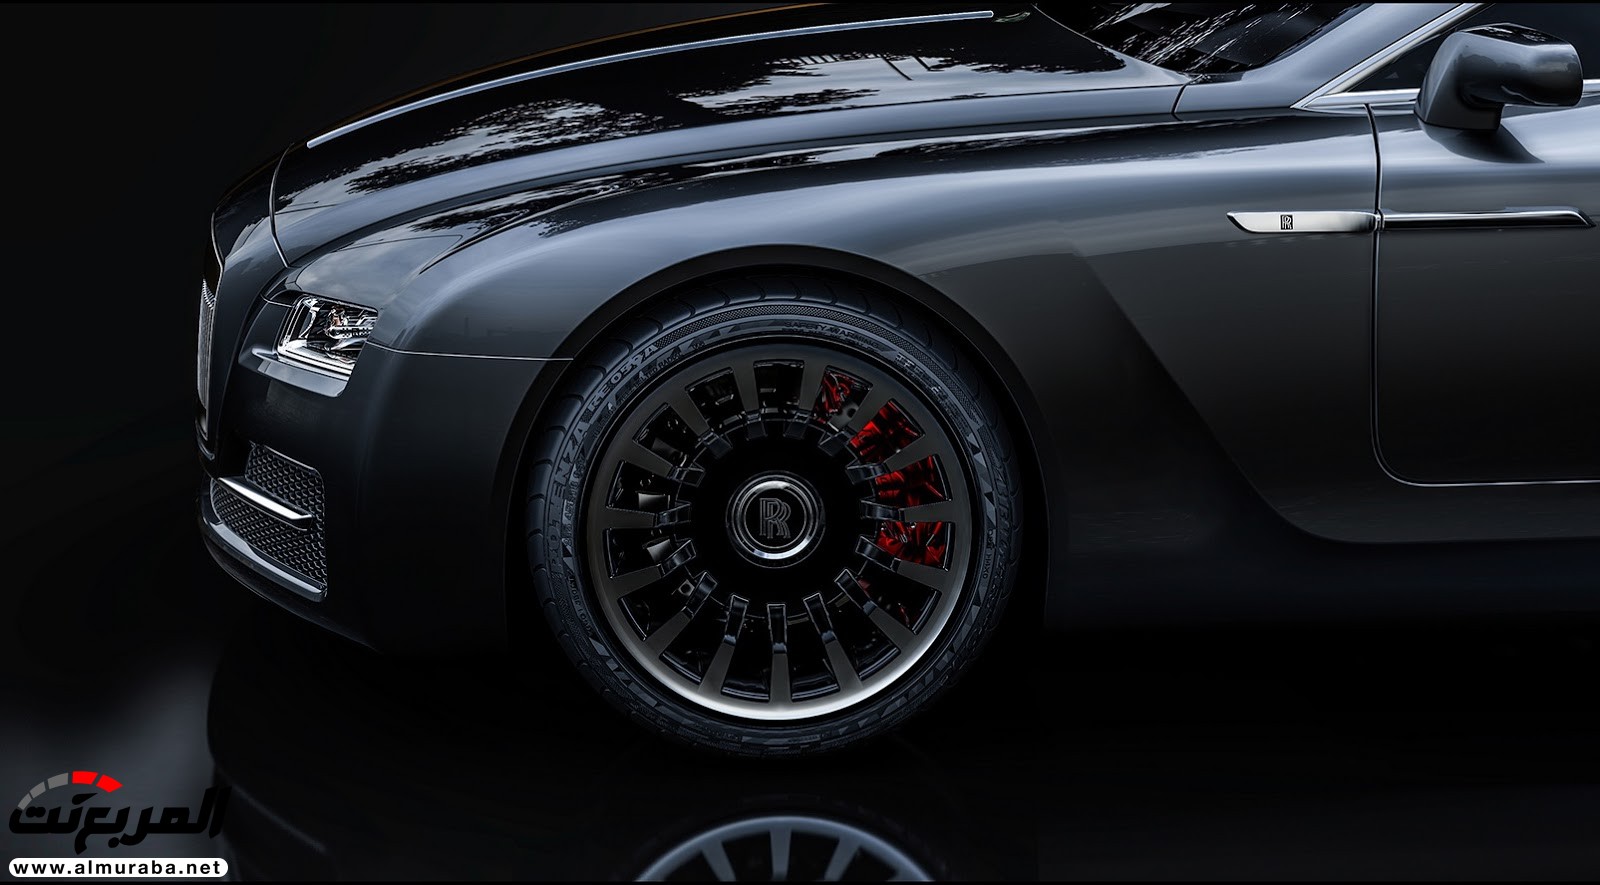 "صور افتراضية" لما يمكن أن تبدو عليه "رولز رويس" رايث كوبيه 2020 Rolls-Royce Wraith Coupe 67